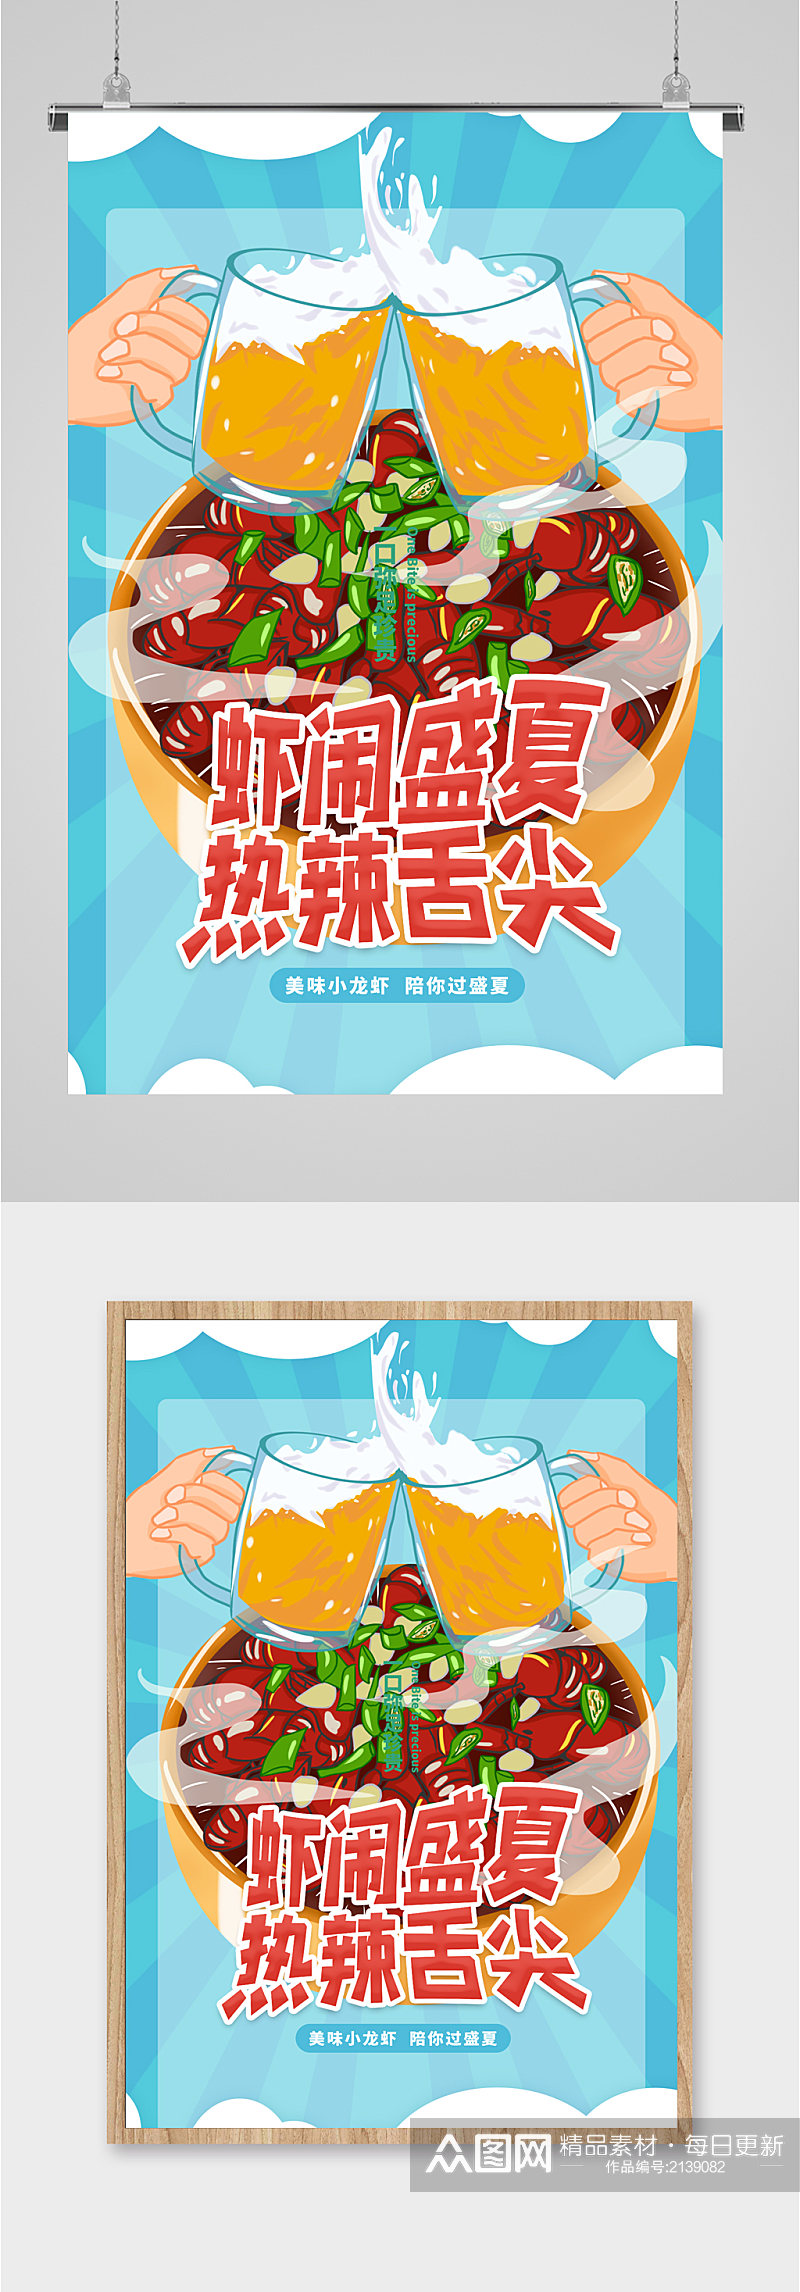 美食啤酒宣传海报素材